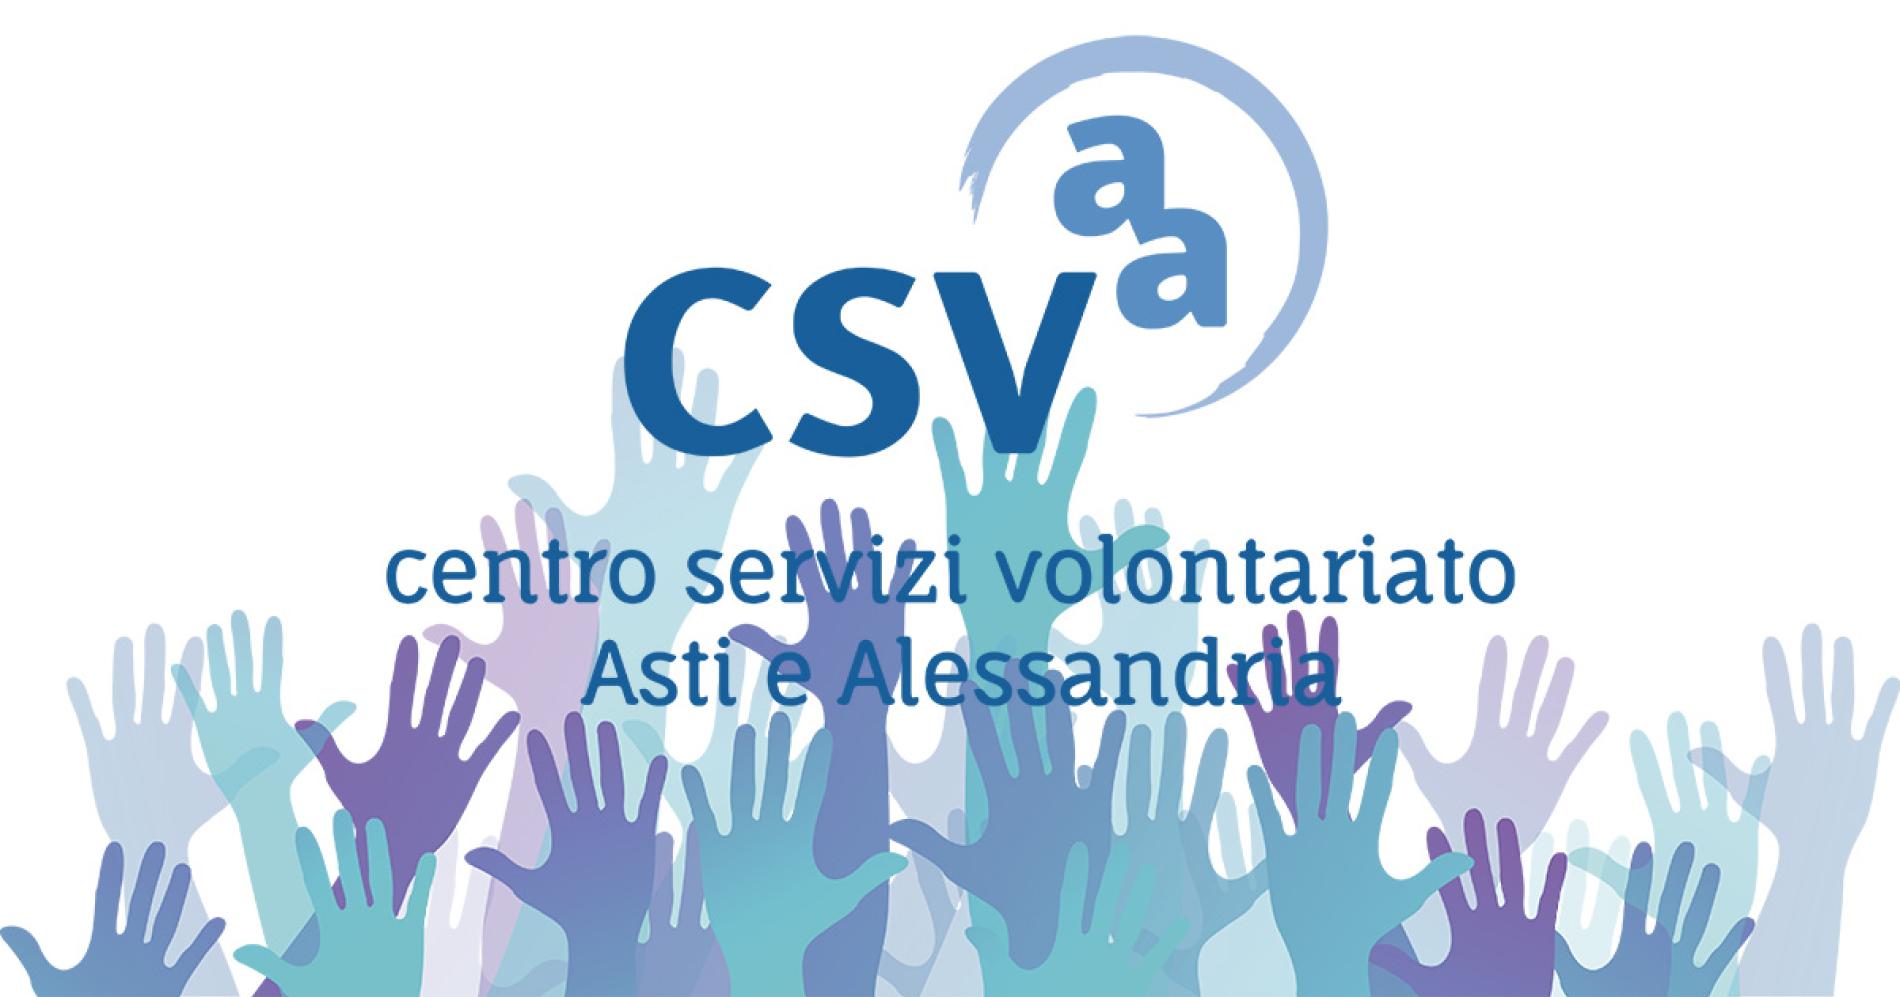 Il Csvaa cerca volontari per il Terzo settore